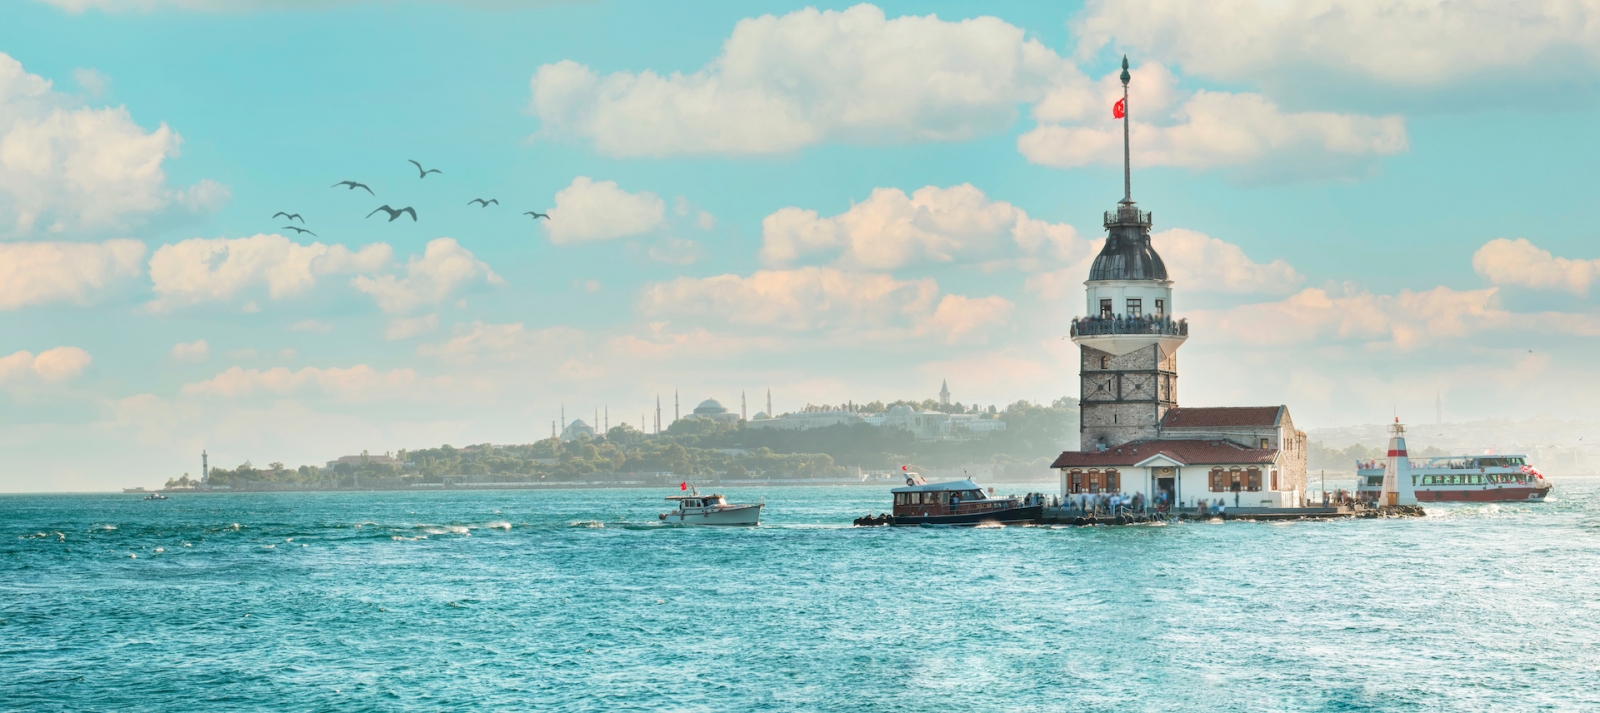 Leanderturm in Istanbul, Türkei (KIZ KULESI - USKUDAR)